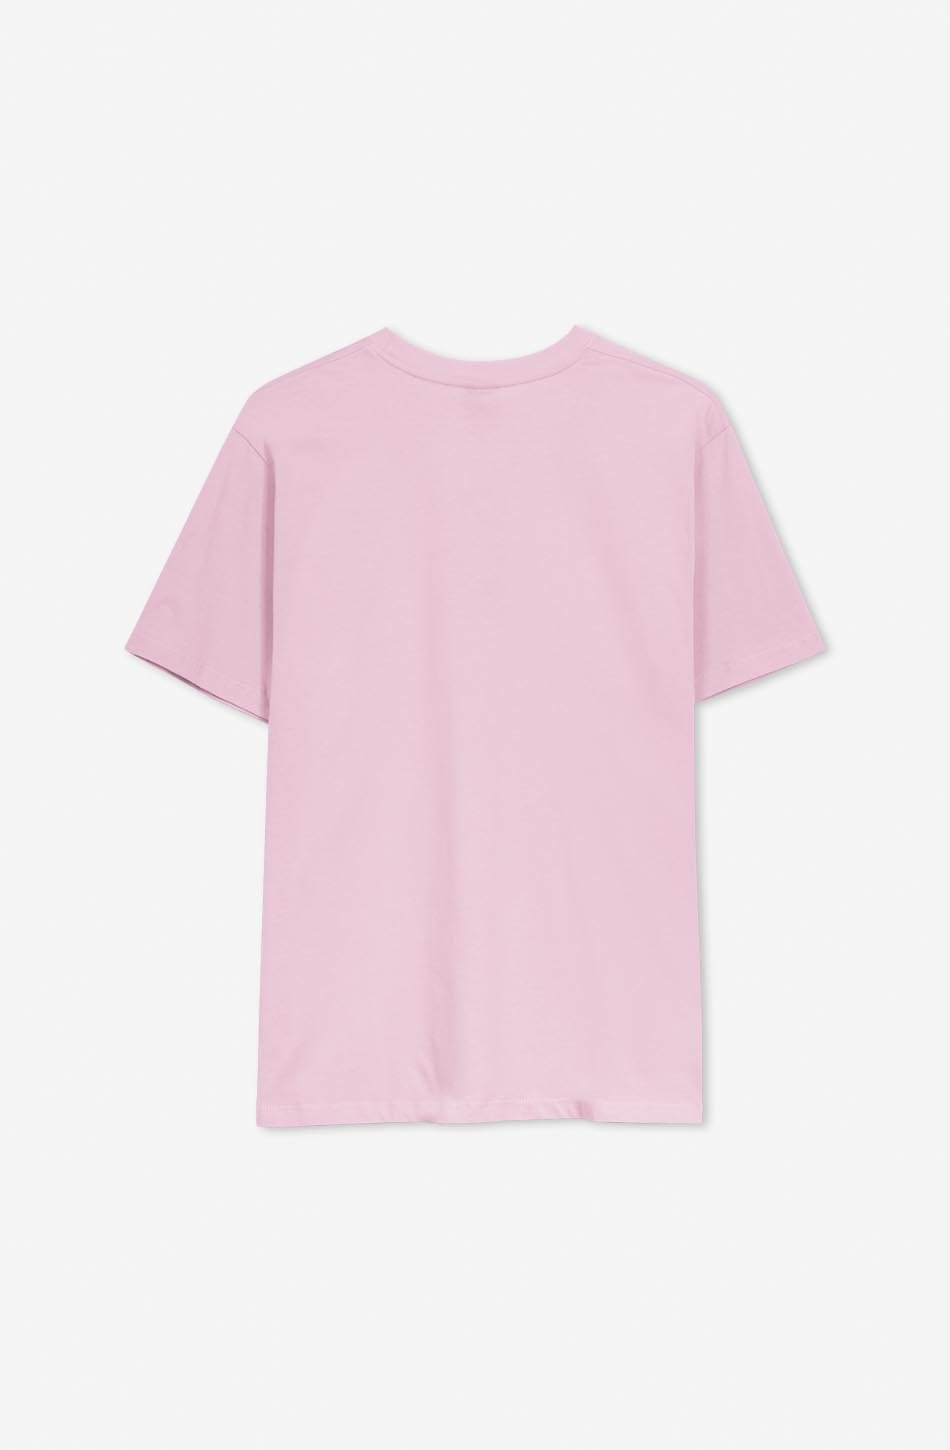 T-shirt Pocket Loving Bear Gum Pink